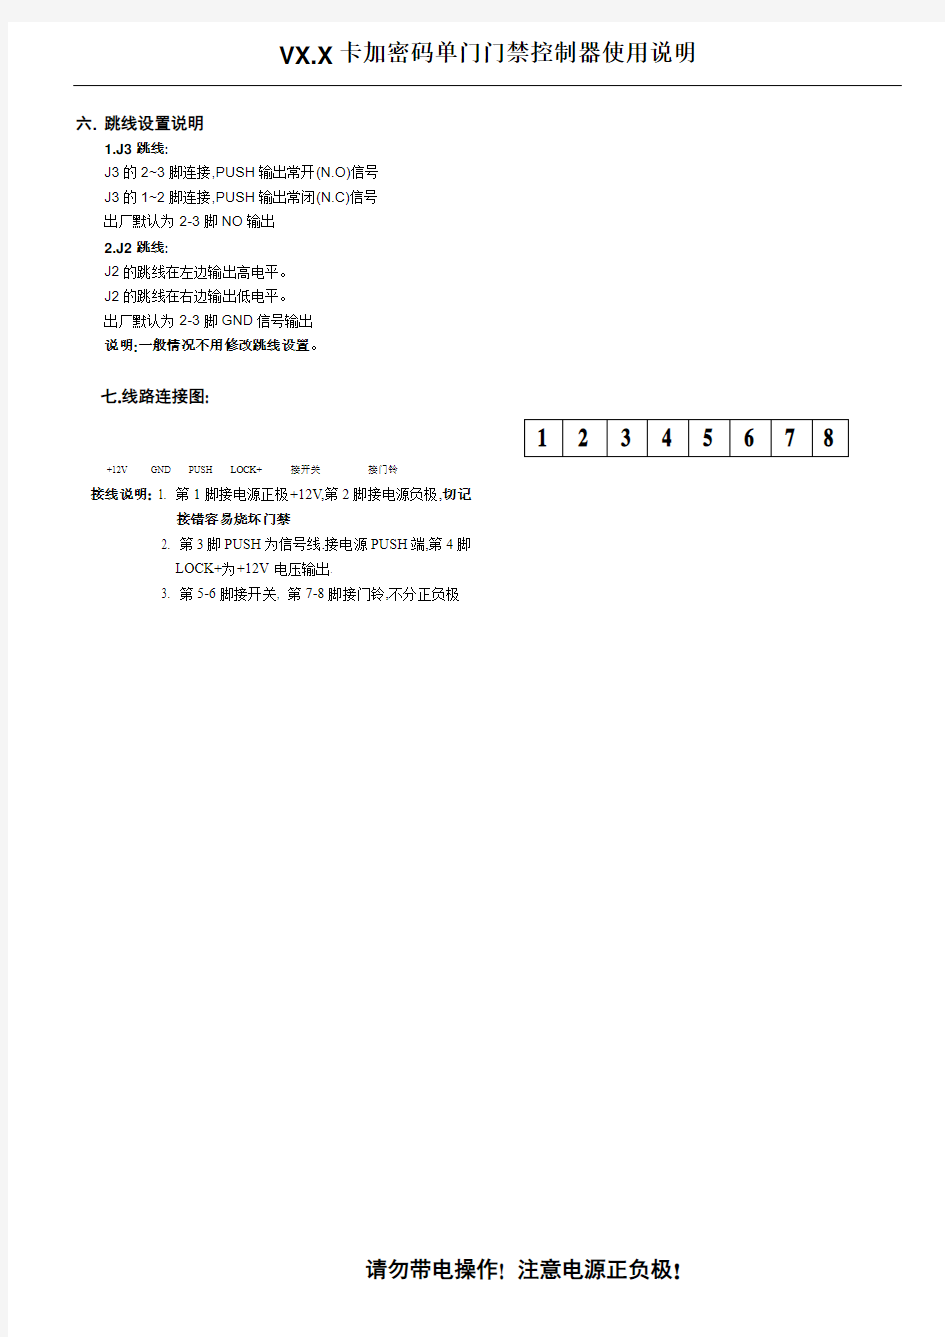 按键中文操作说明书(1088用户中文)